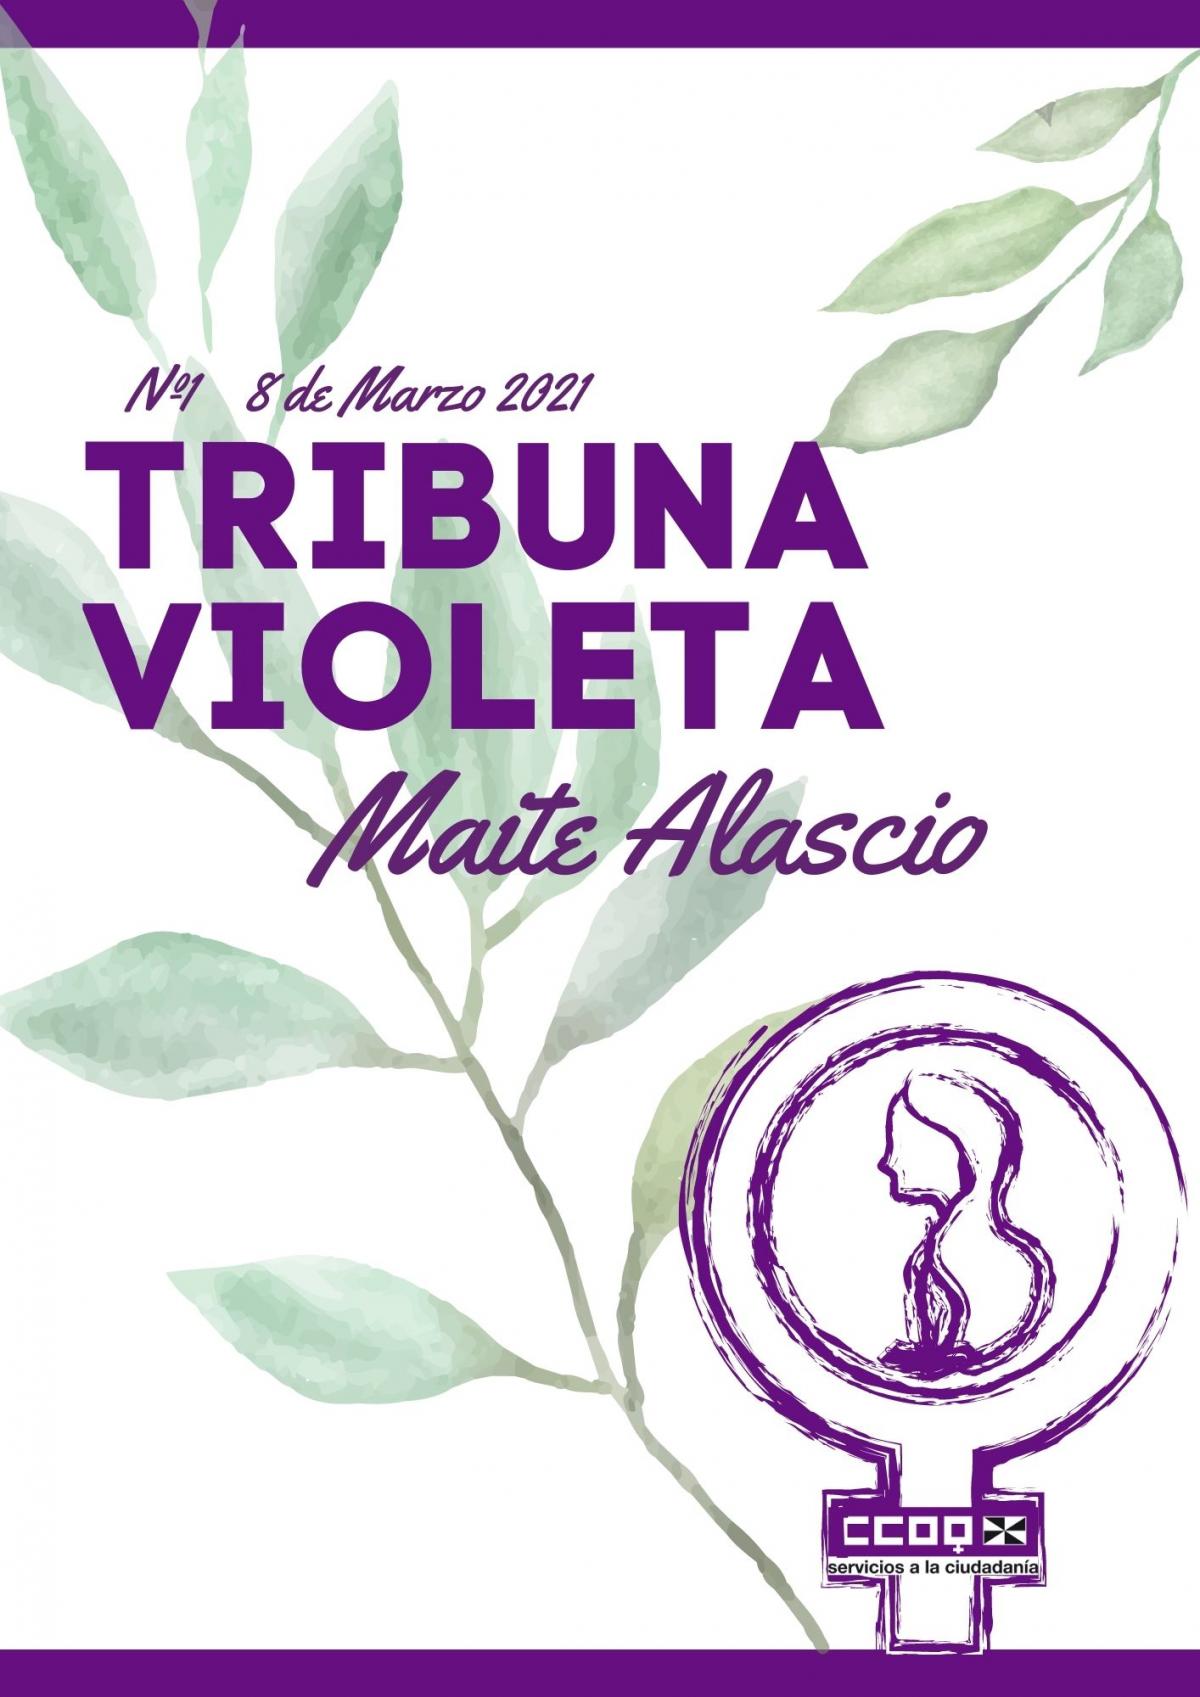 Tribuna Violeta Maite Alascio